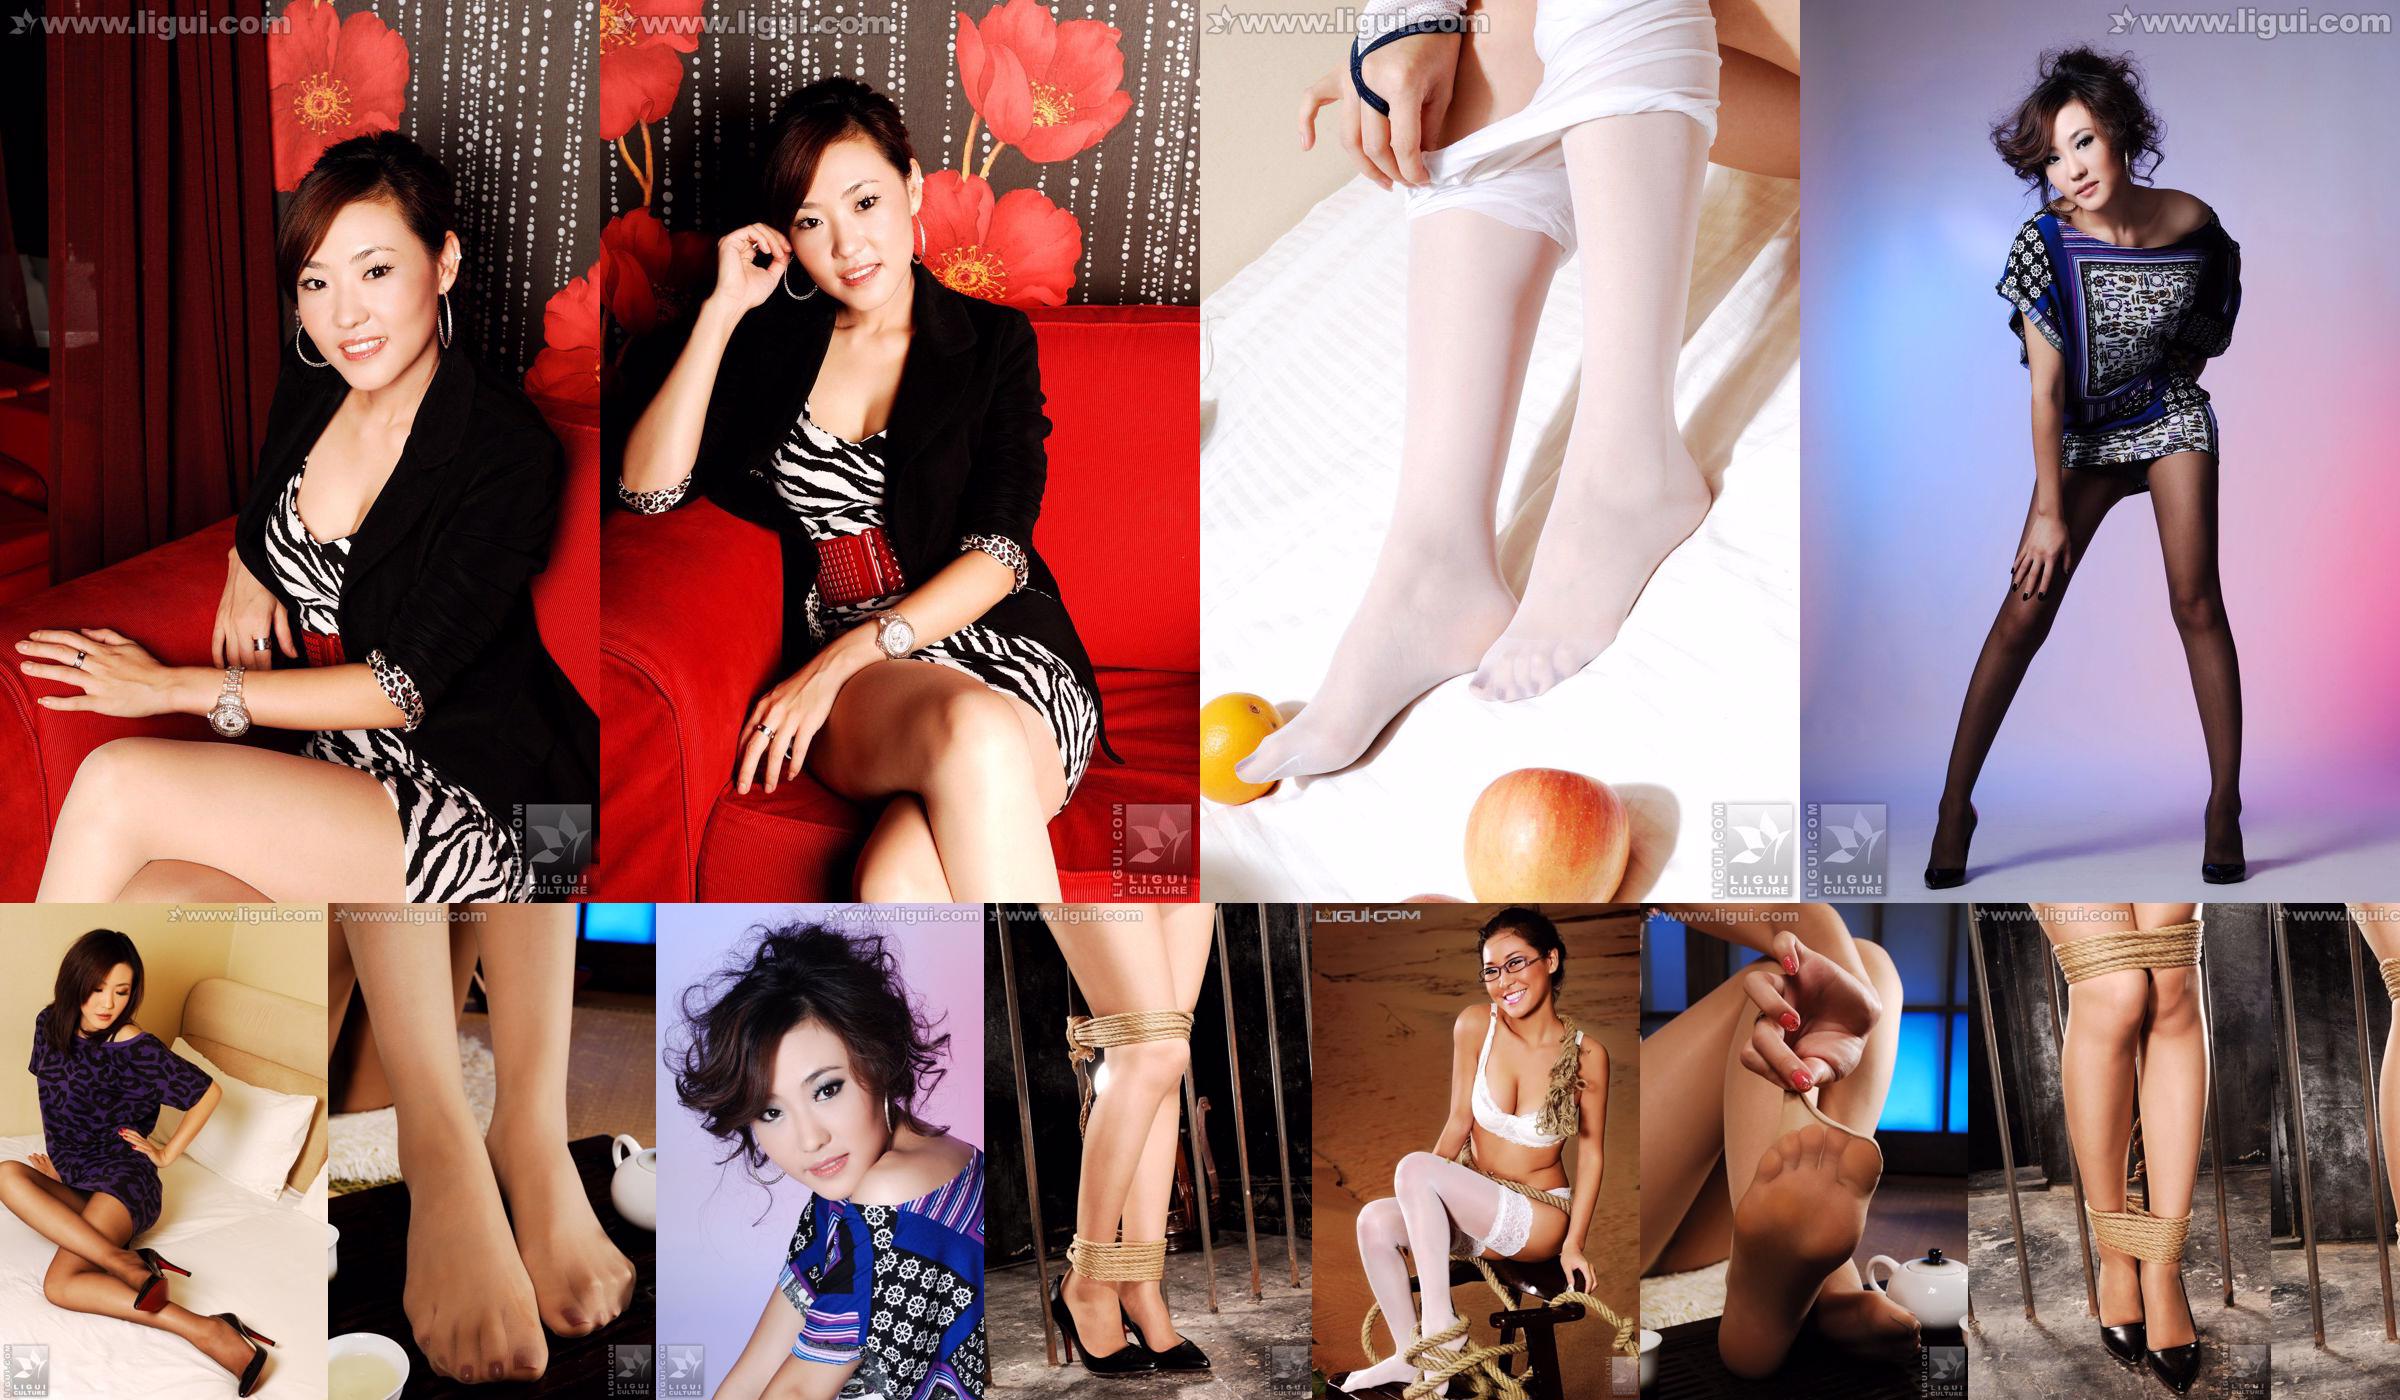 Model CoCo "Fußschönheit in einer bunten Welt" [丽 柜 LiGui] Foto von schönen Beinen und Jadefüßen No.a55304 Seite 13